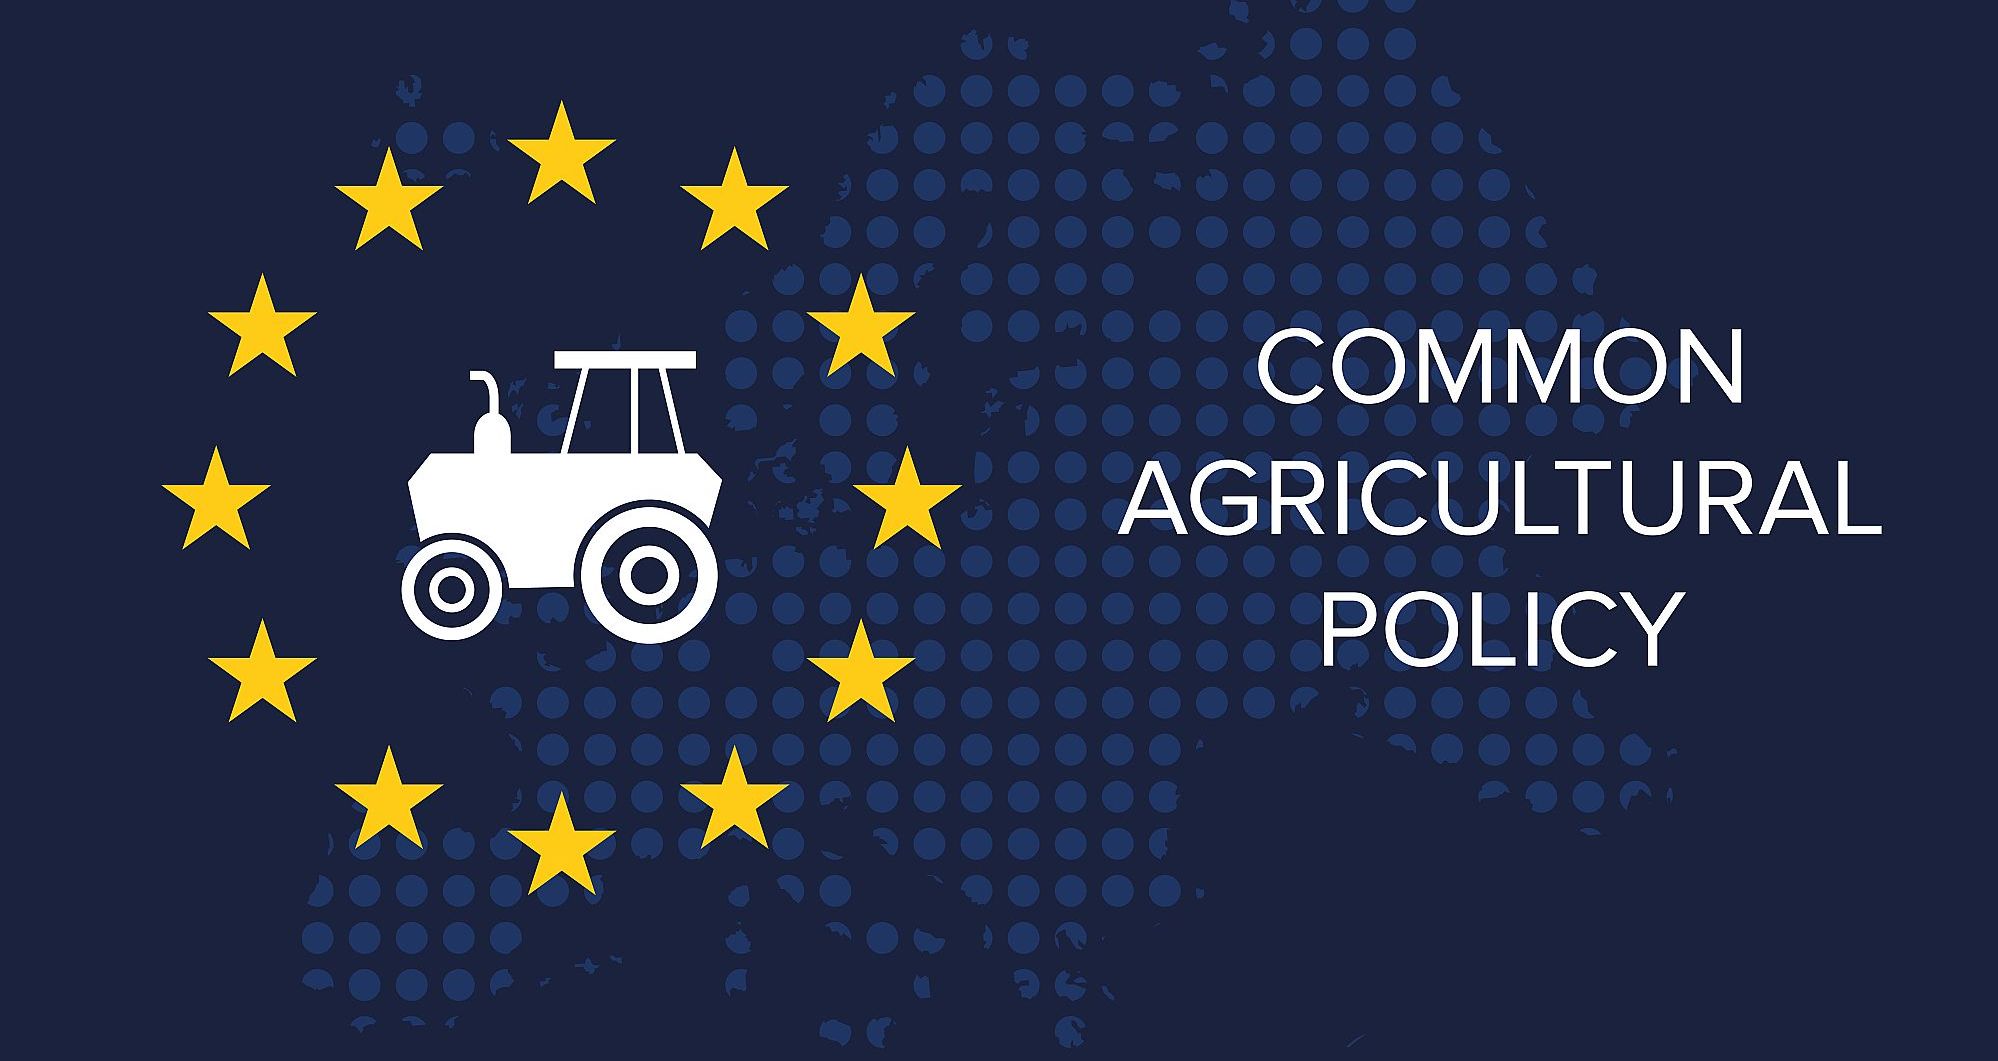 Flagge der Europäischen Union mit deinem Tecker in der Mitte der Sterne und rechts daneben die Beschriftung: "Common Agricultural Policy